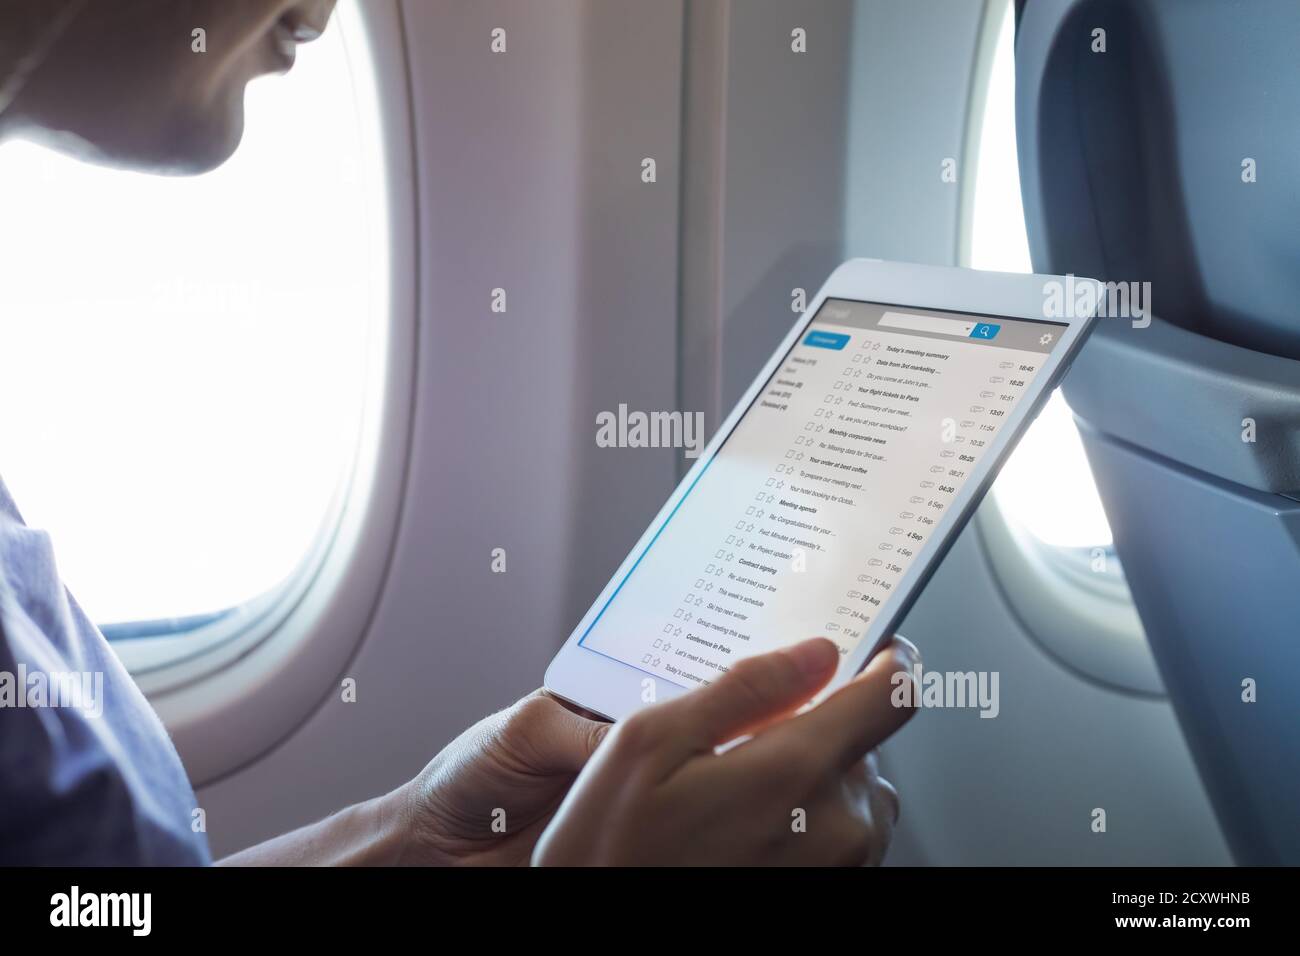 Arbeiten mit E-Mail im Flugzeug während des Fluges mit WiFi-Internetverbindung, Passagier mit Tablet-Computer per E-Mail in Airpla kommunizieren Stockfoto